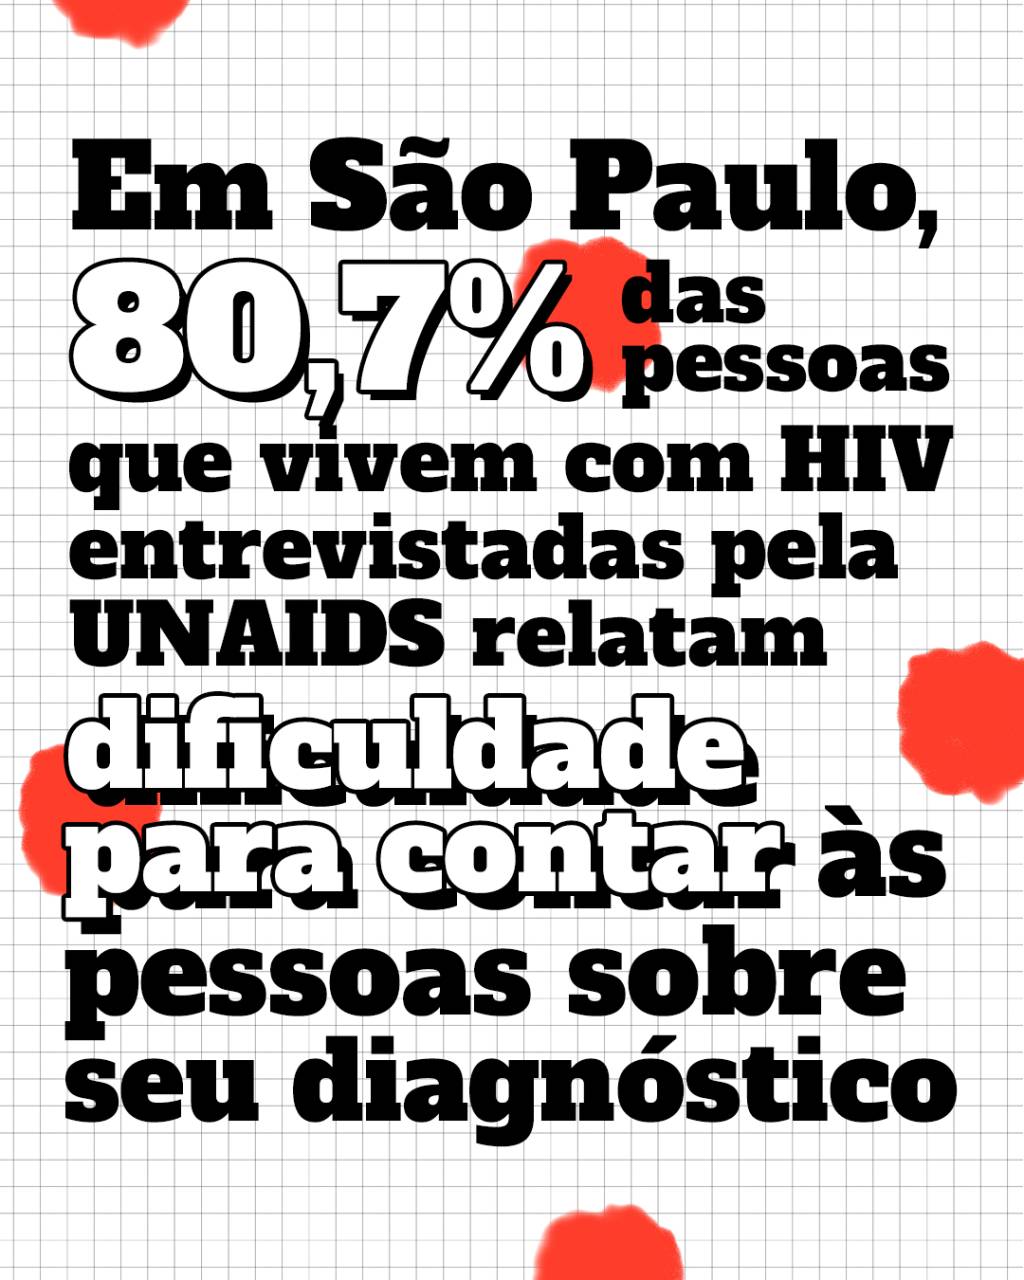 Dados HIV – Imagem com o texto: Em São Paulo 80,7% das pessoas em vivem com HIV entrevistas pela UNAIDS relatam dificuldade para contar às pessoas sobre seu diagnóstico.